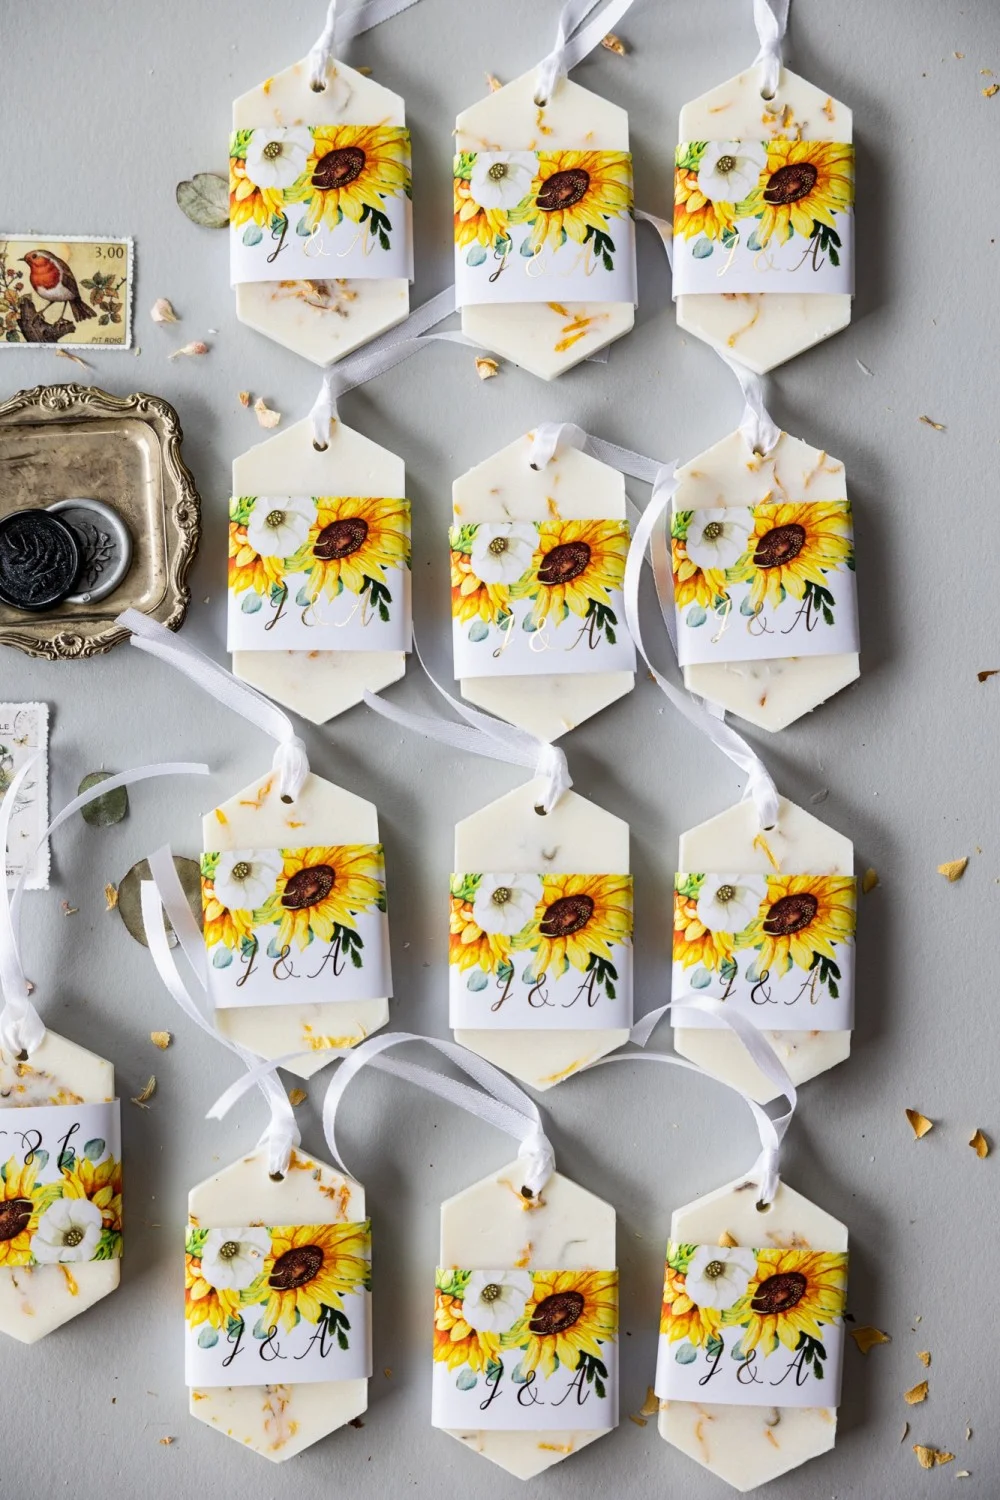 Cadeaux en cire de soja personnalisés, faits à la main, pour les invités de votre mariage, avec texte en or et tournesol.